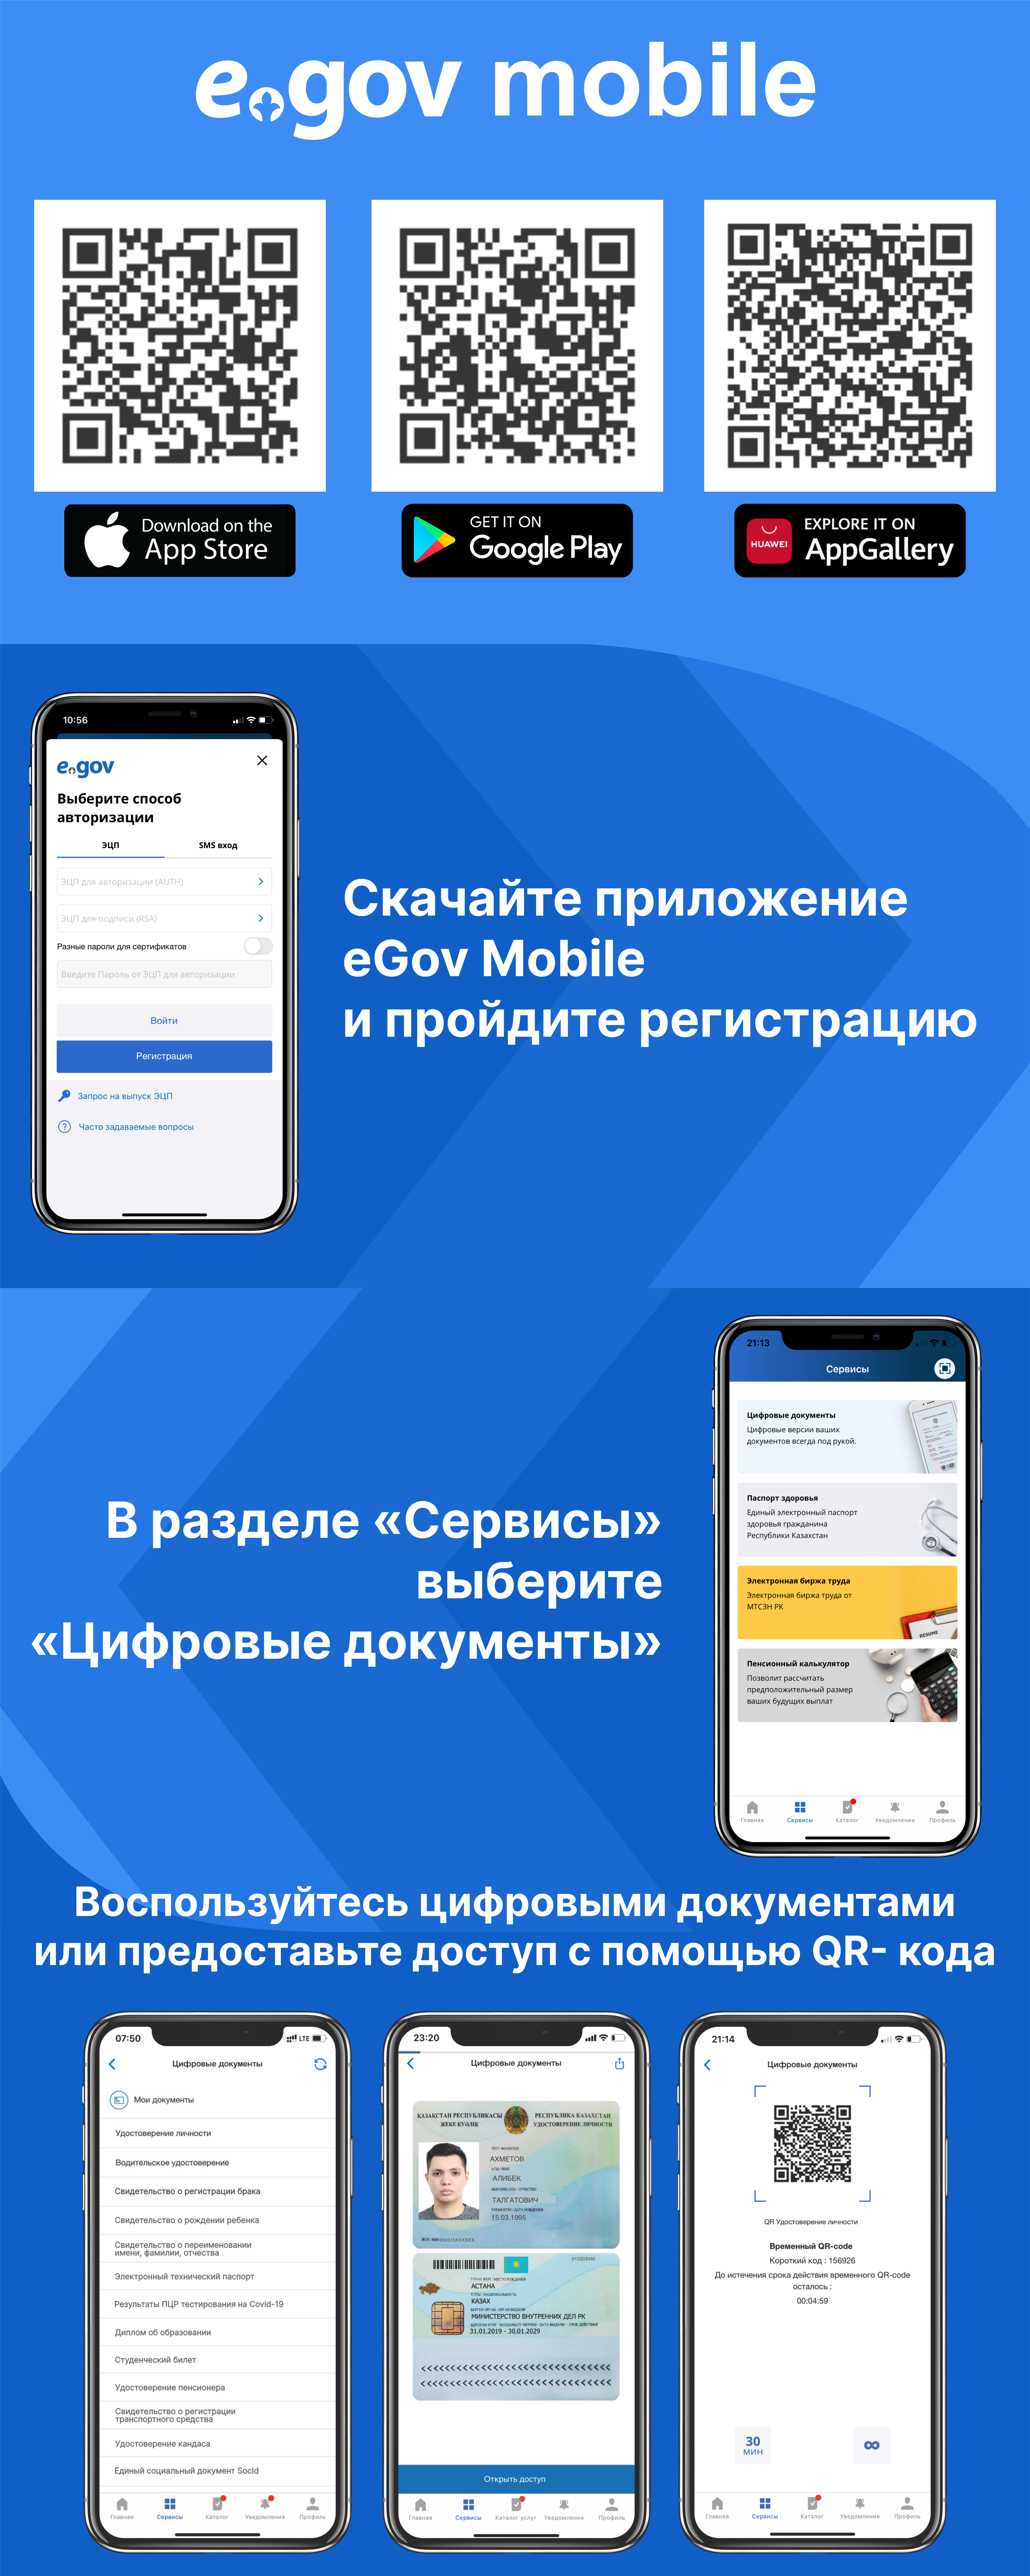 Egov mobile цифровые документы